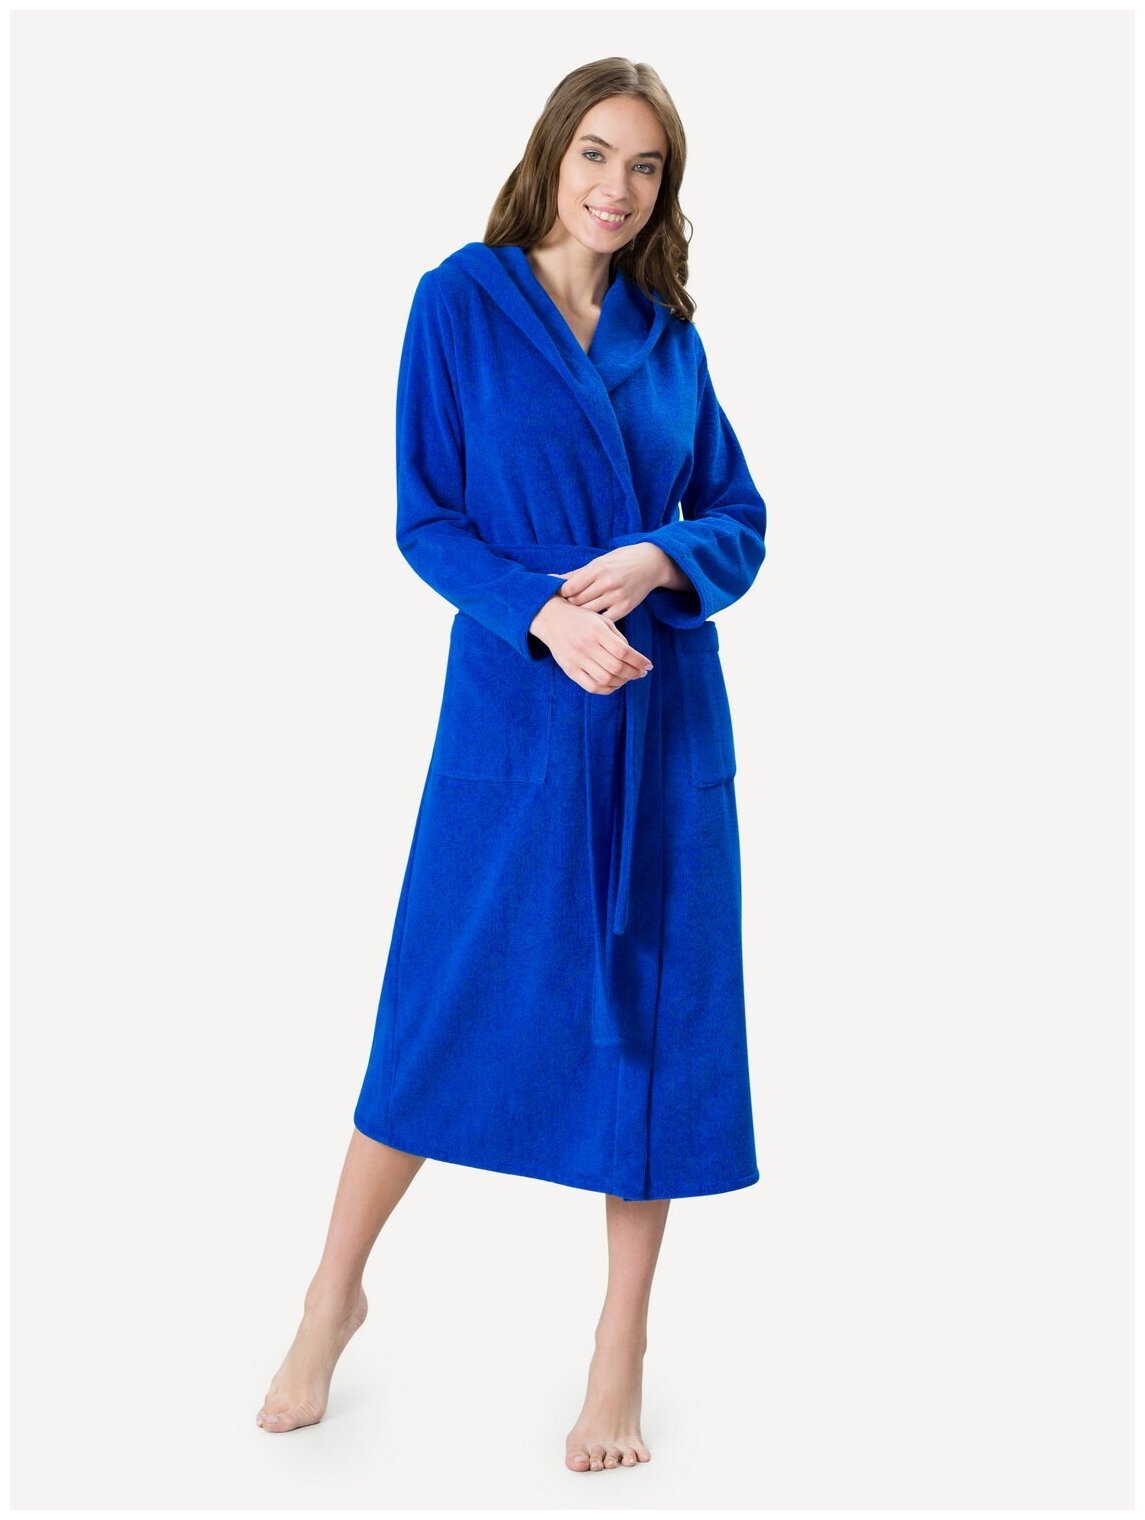 Женский халат с капюшоном, синий - фотография № 1